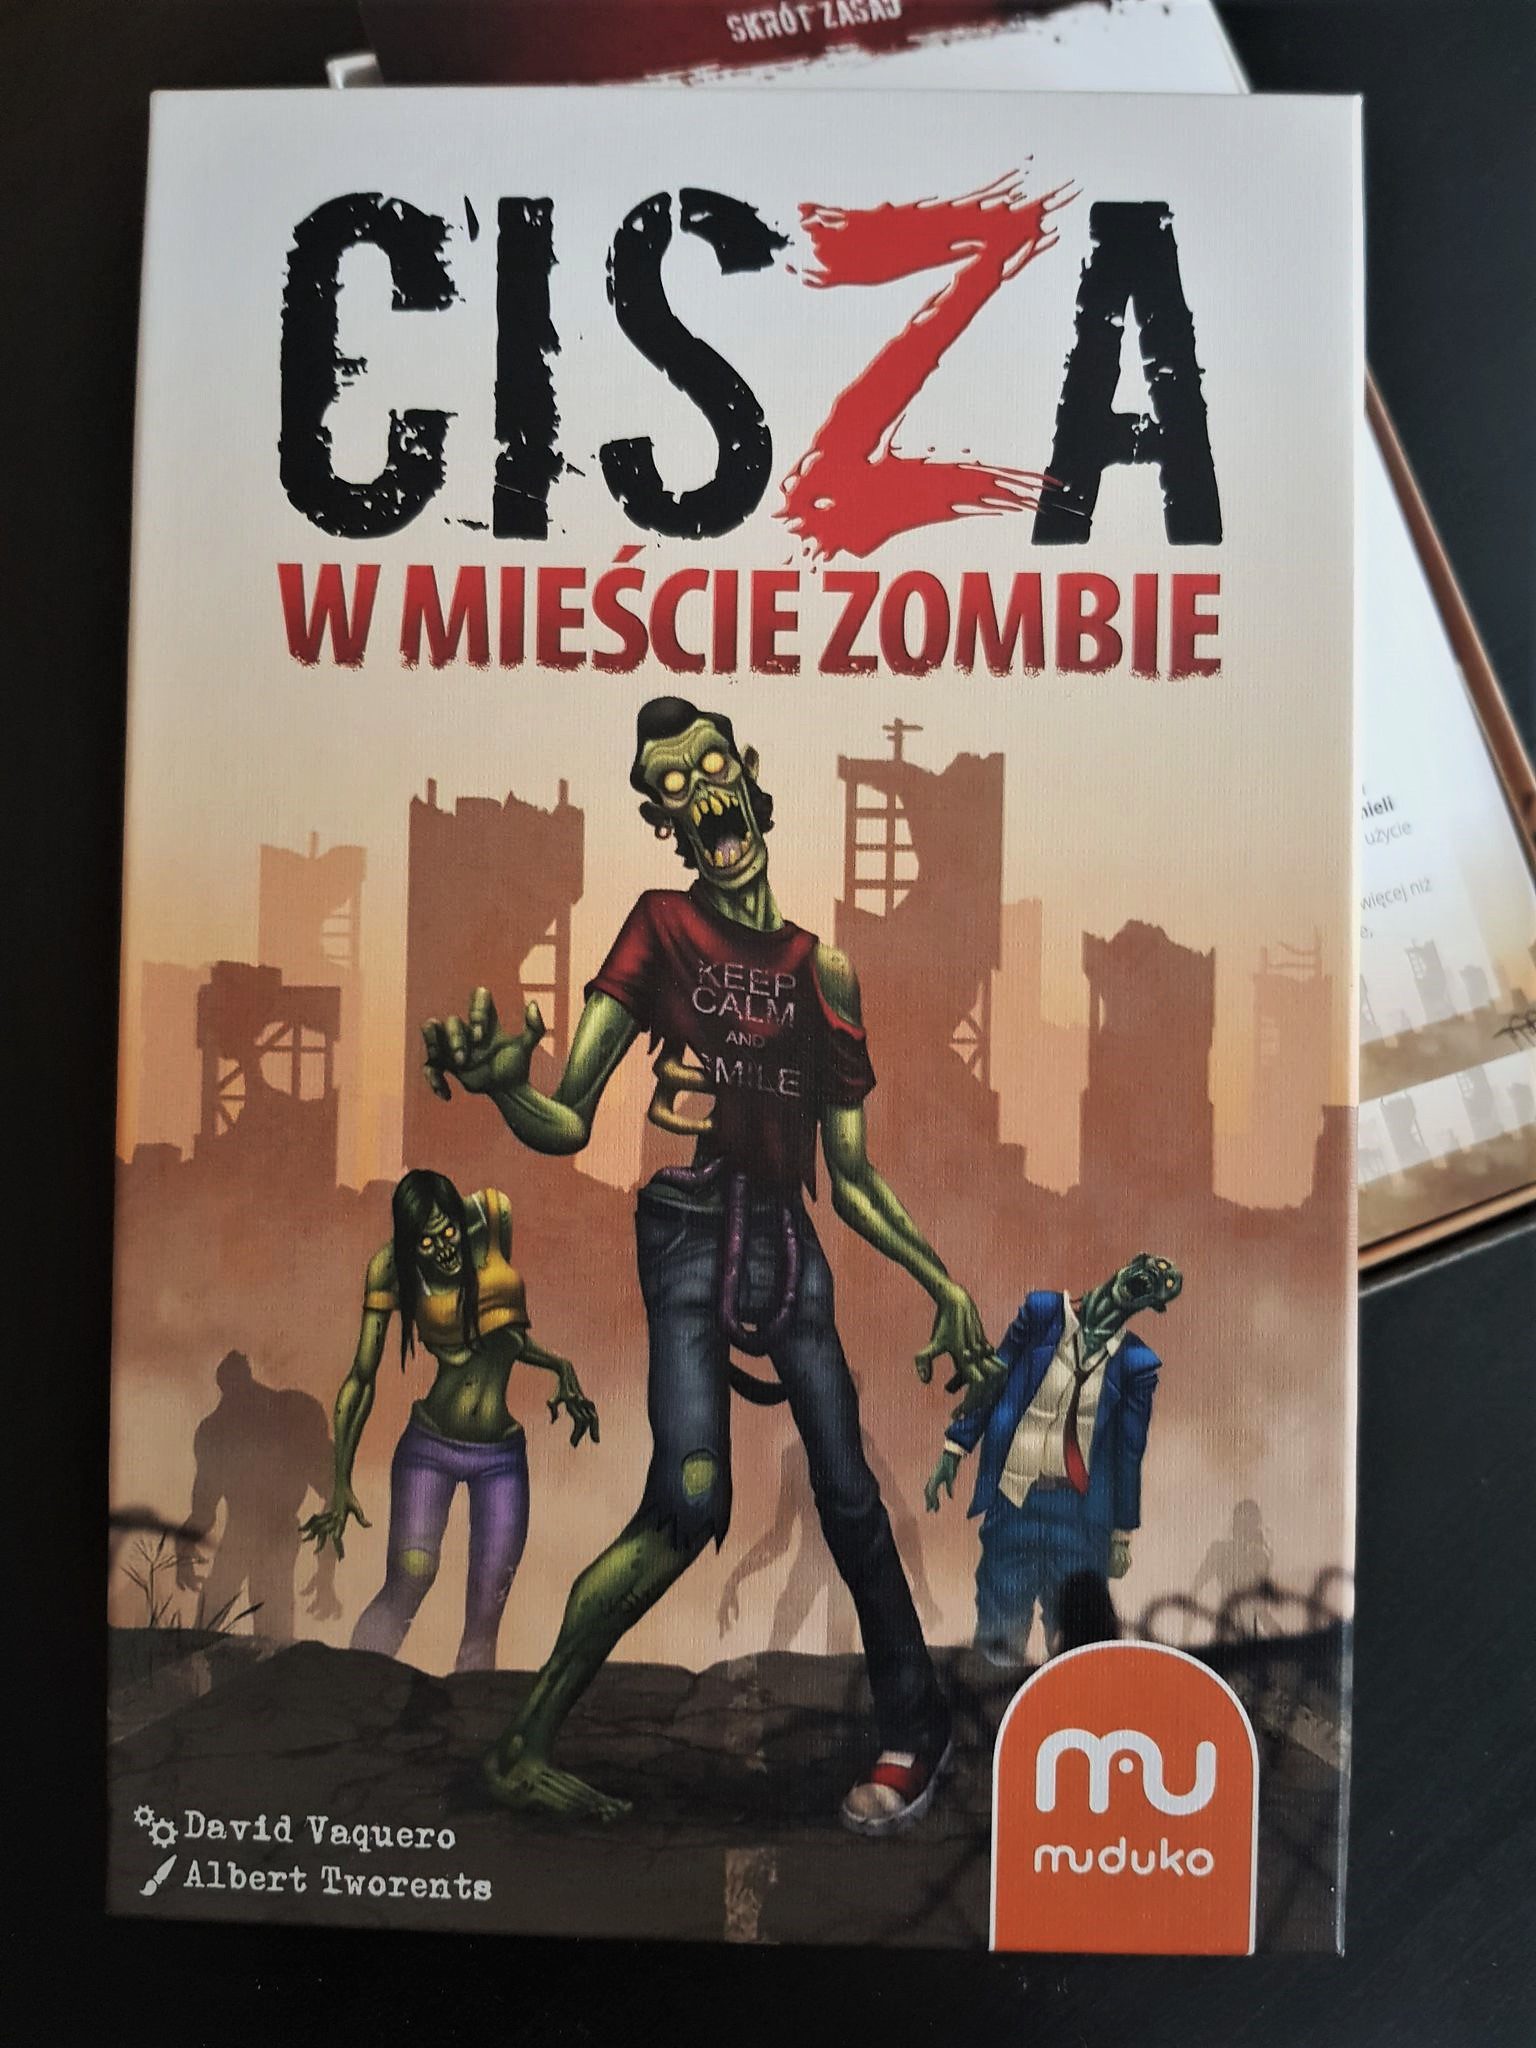 Wszyscy do schronu! „Cisza w mieście Zombie” – recenzja gry karcianej